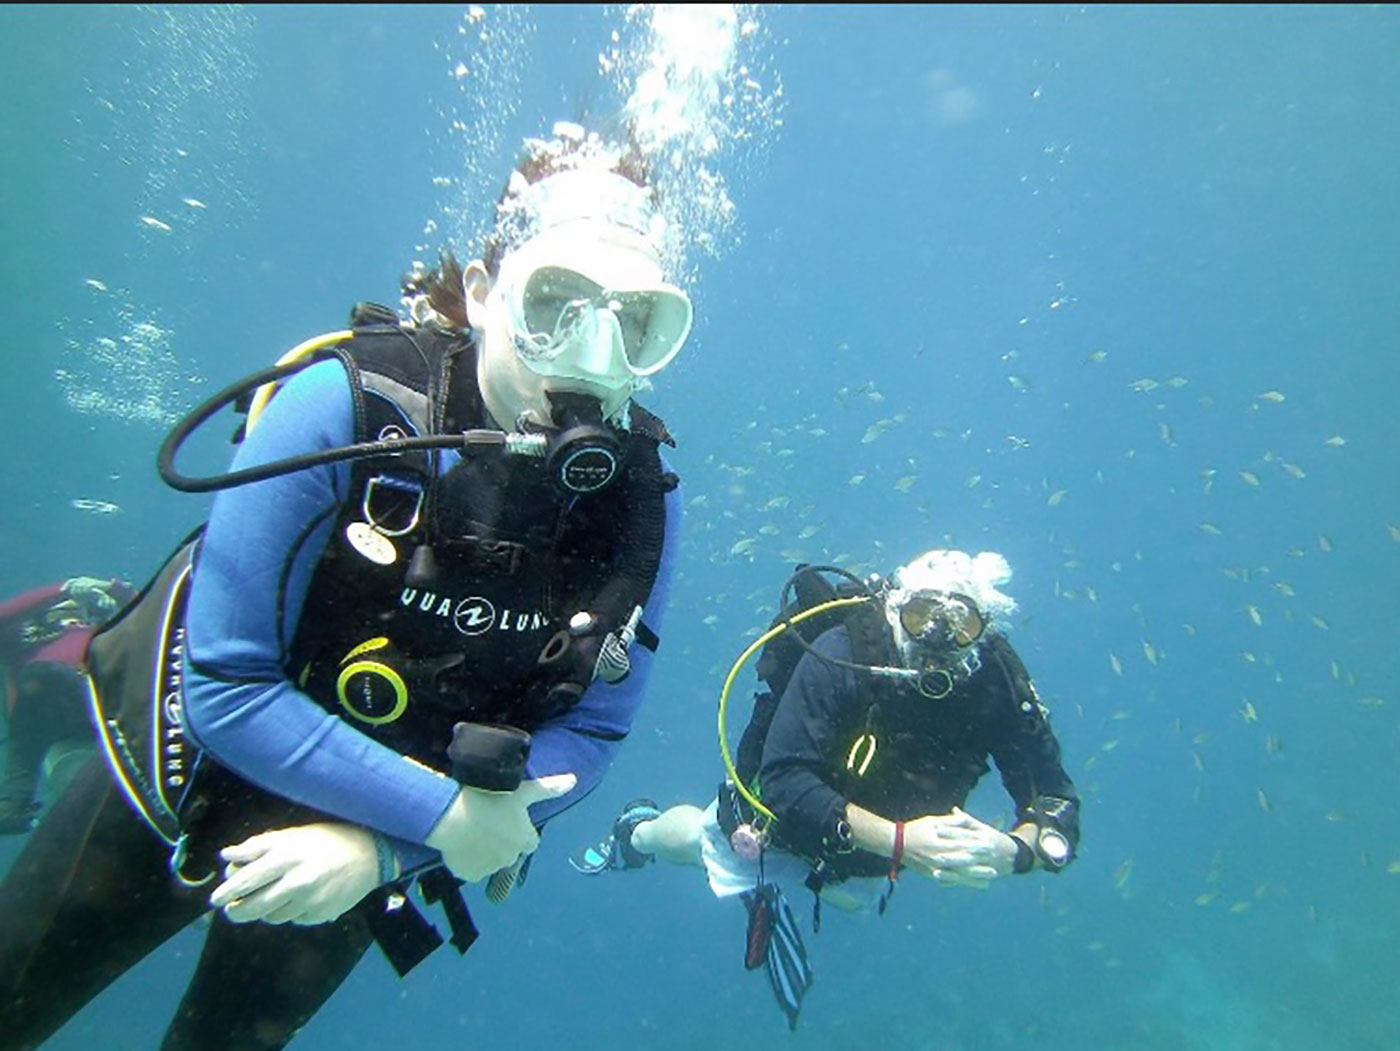 Environmental science alumna Claire Leedy as an environmental diver